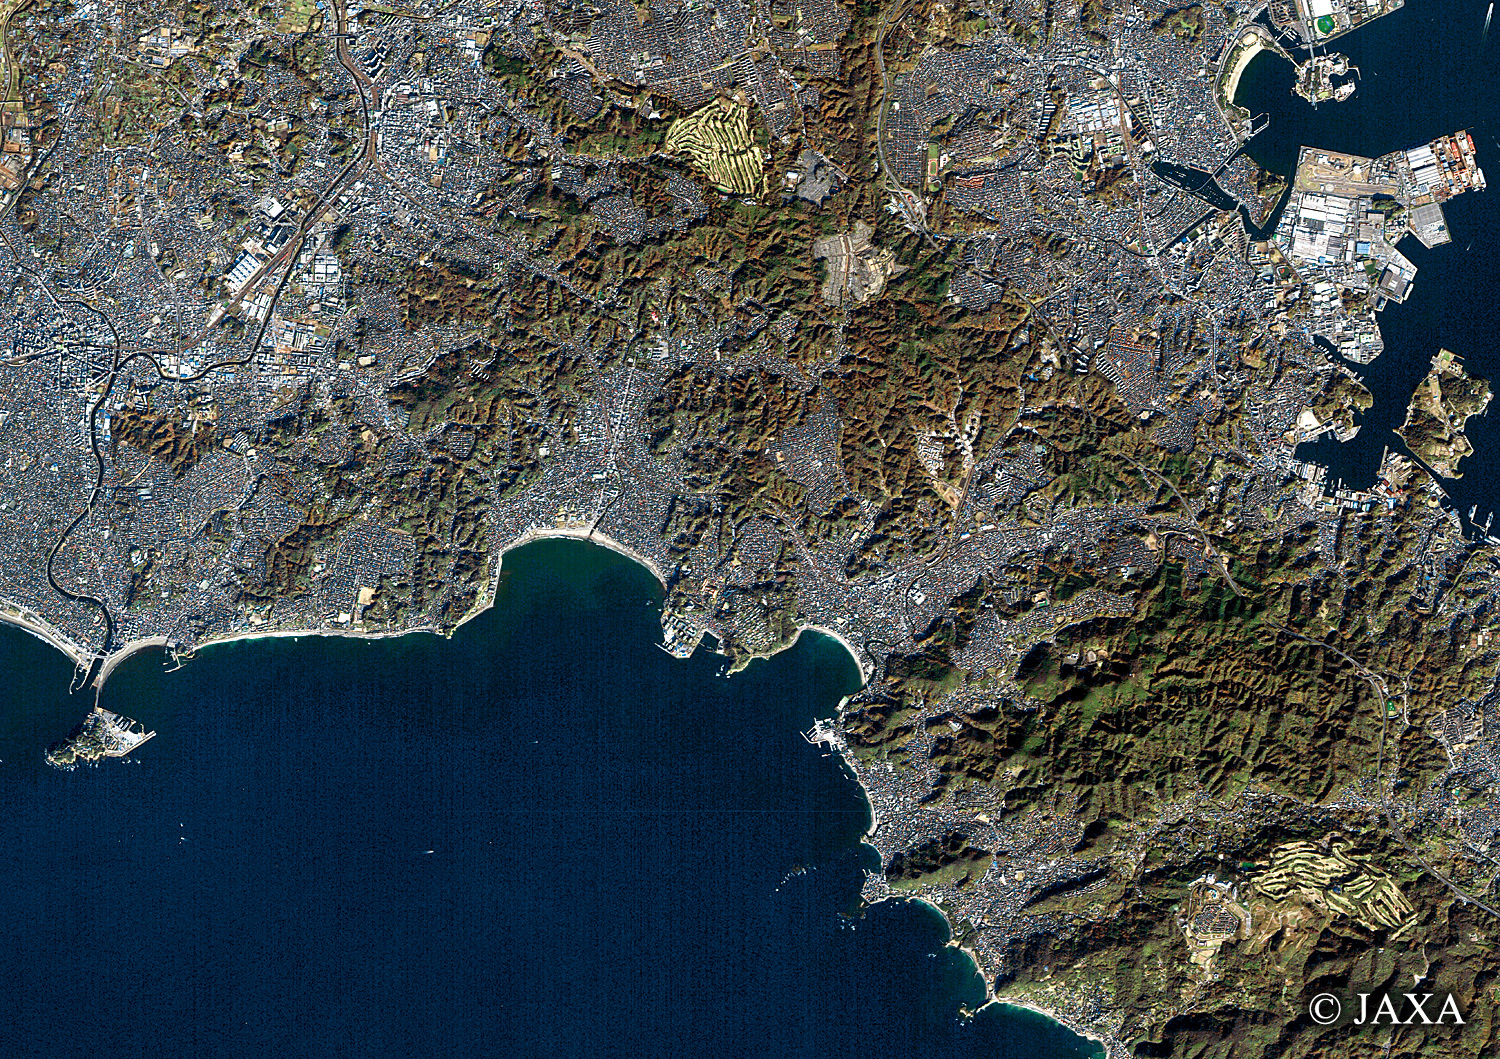 だいちから見た日本の都市 神奈川県鎌倉市周辺:衛星画像